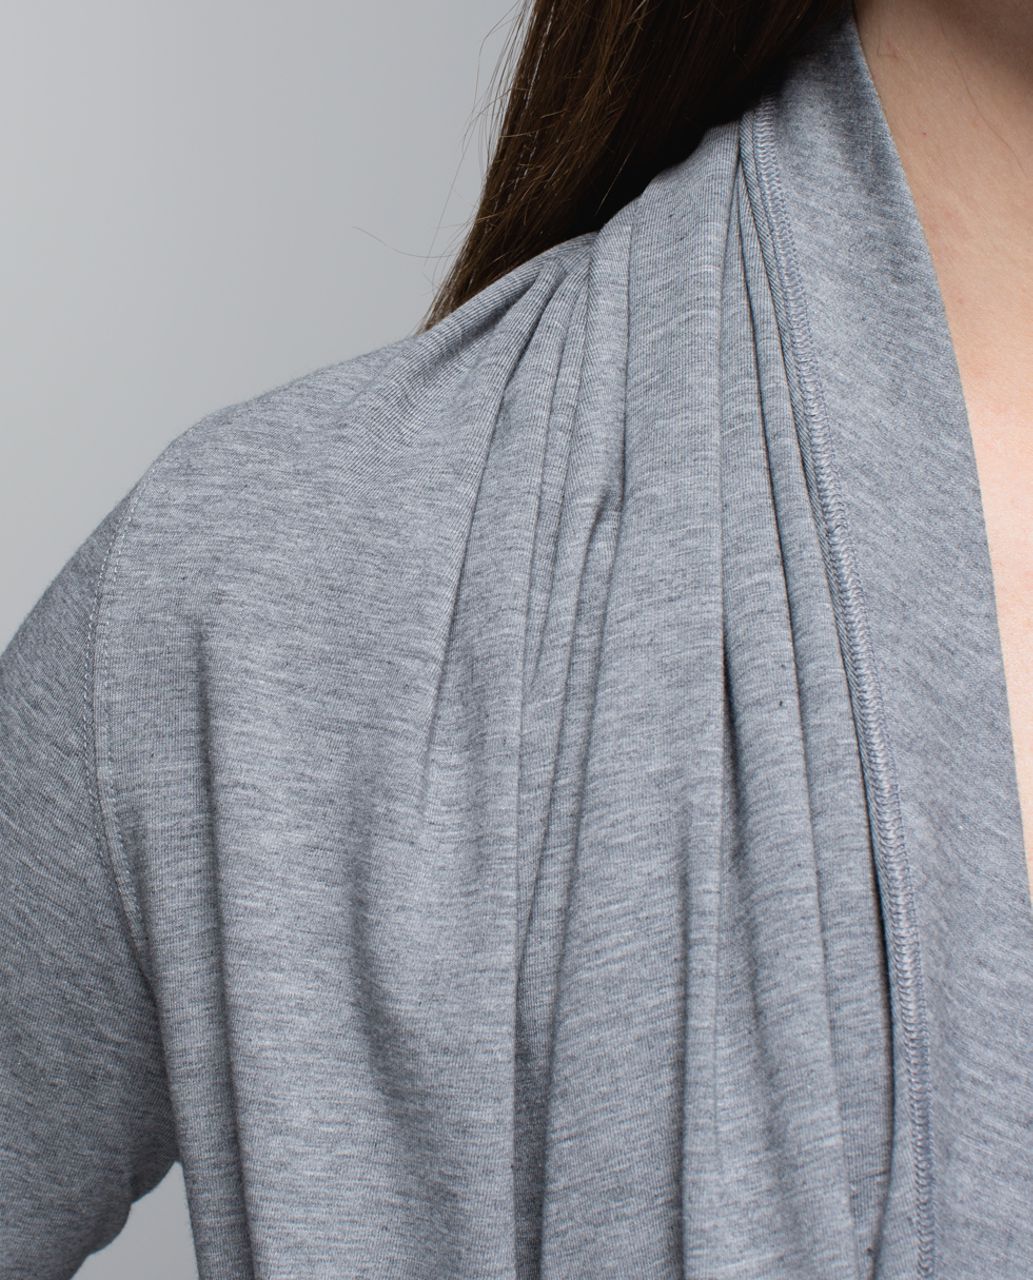 Lululemon Iconic Wrap - Heathered Medium Grey